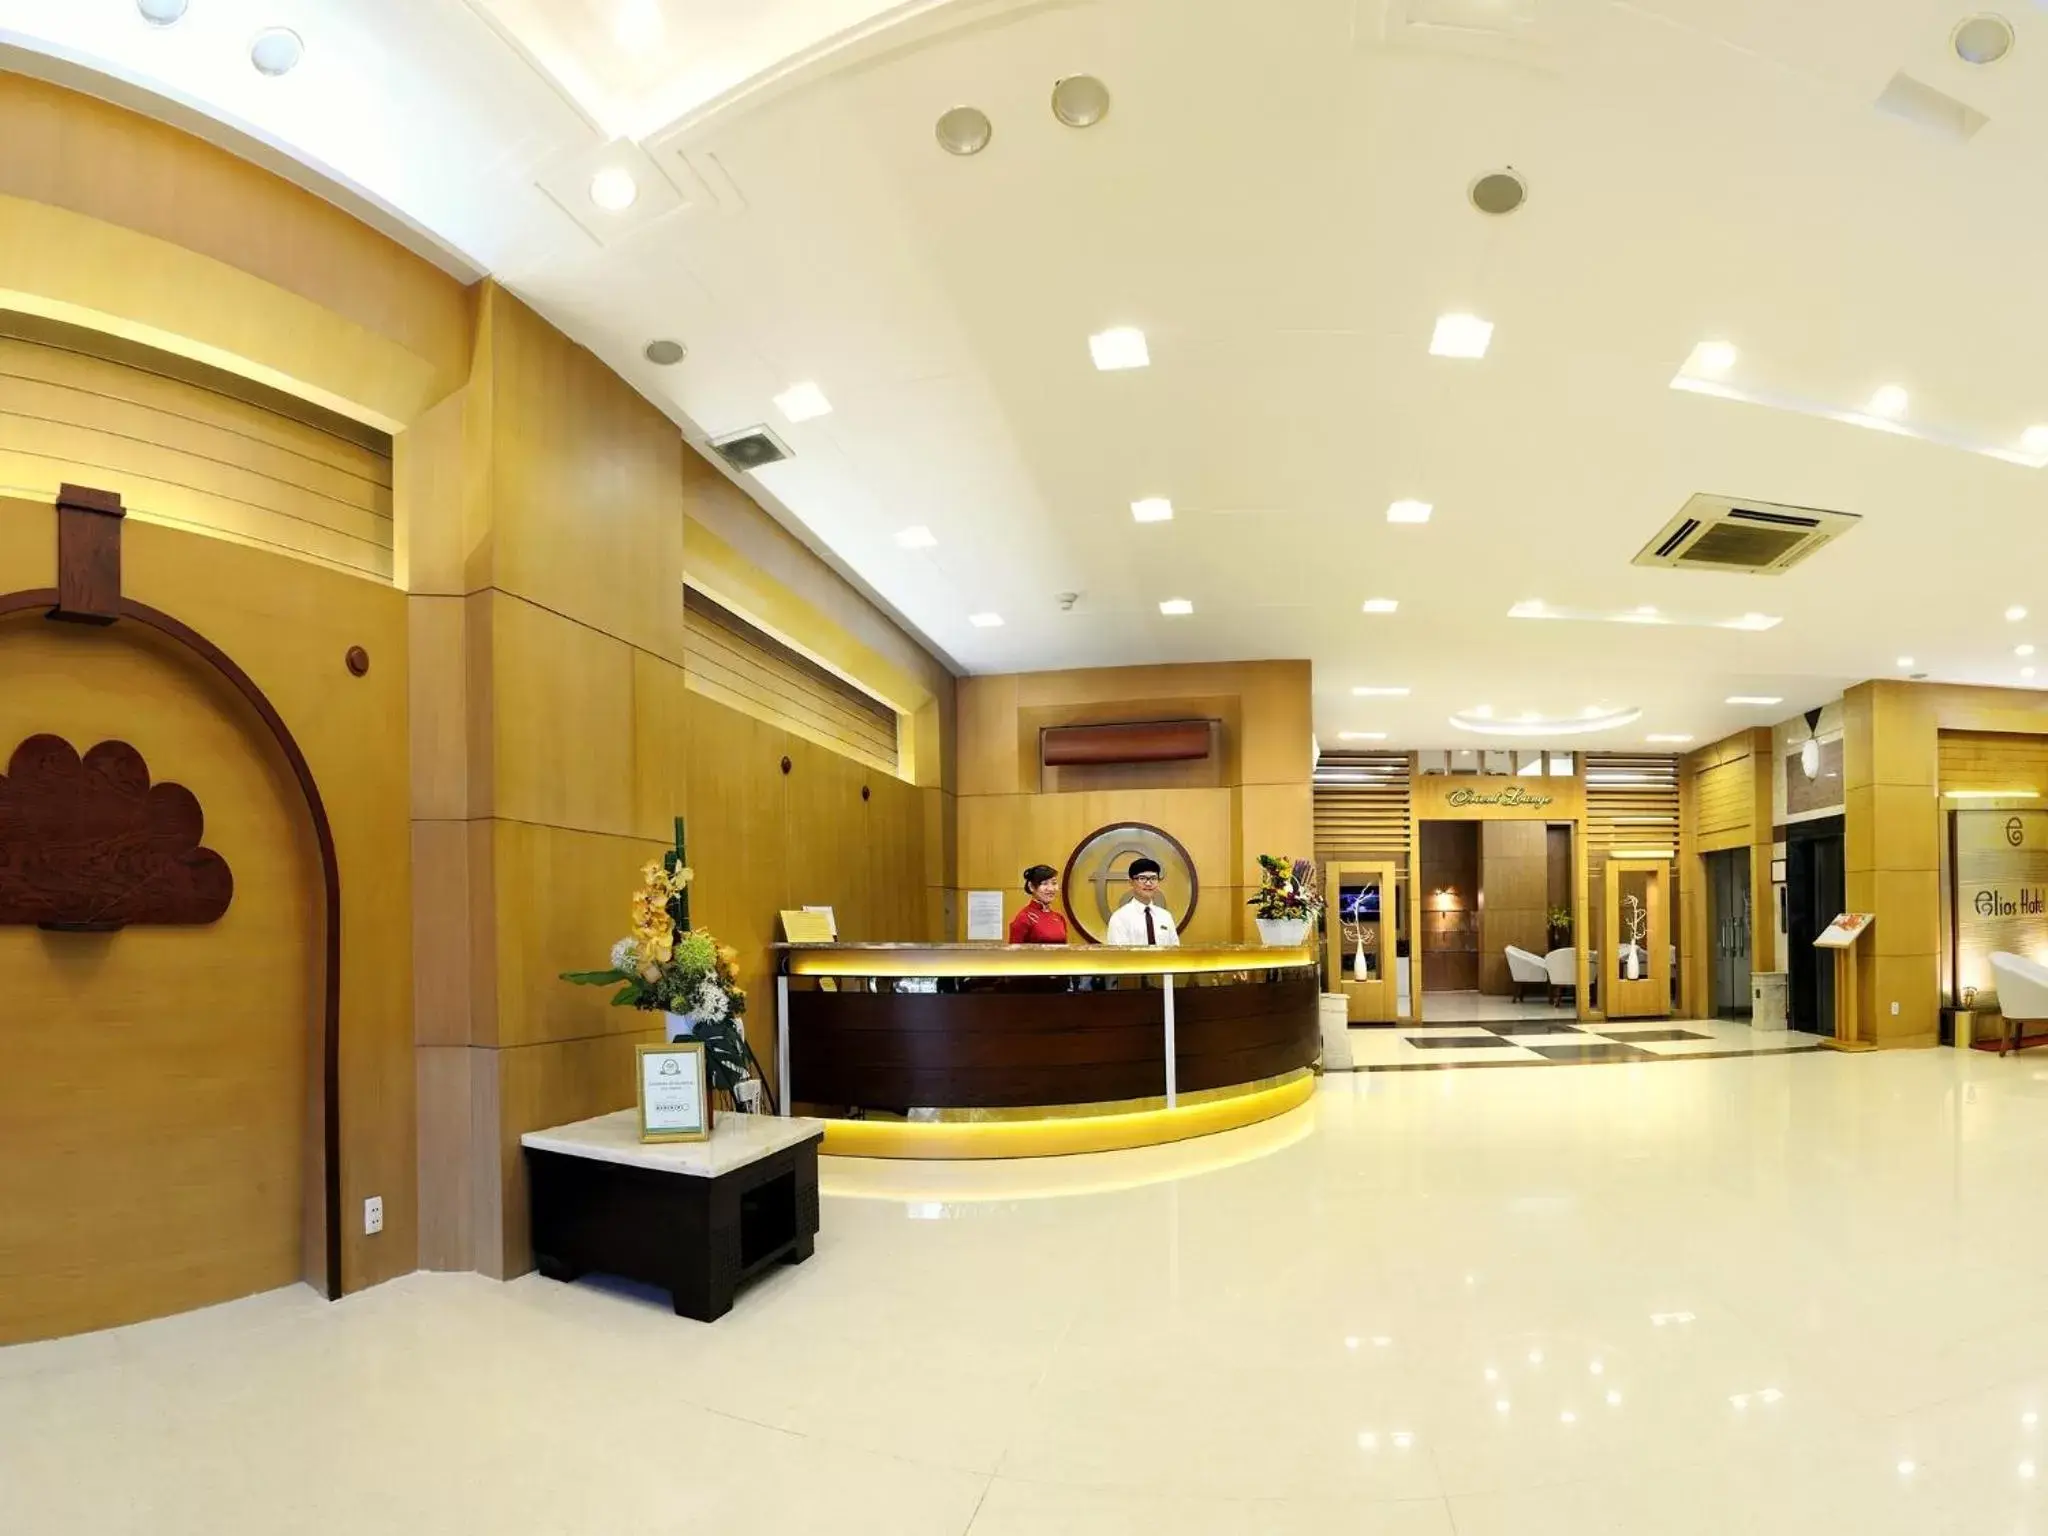 Lobby or reception, Lobby/Reception in Elios Hotel